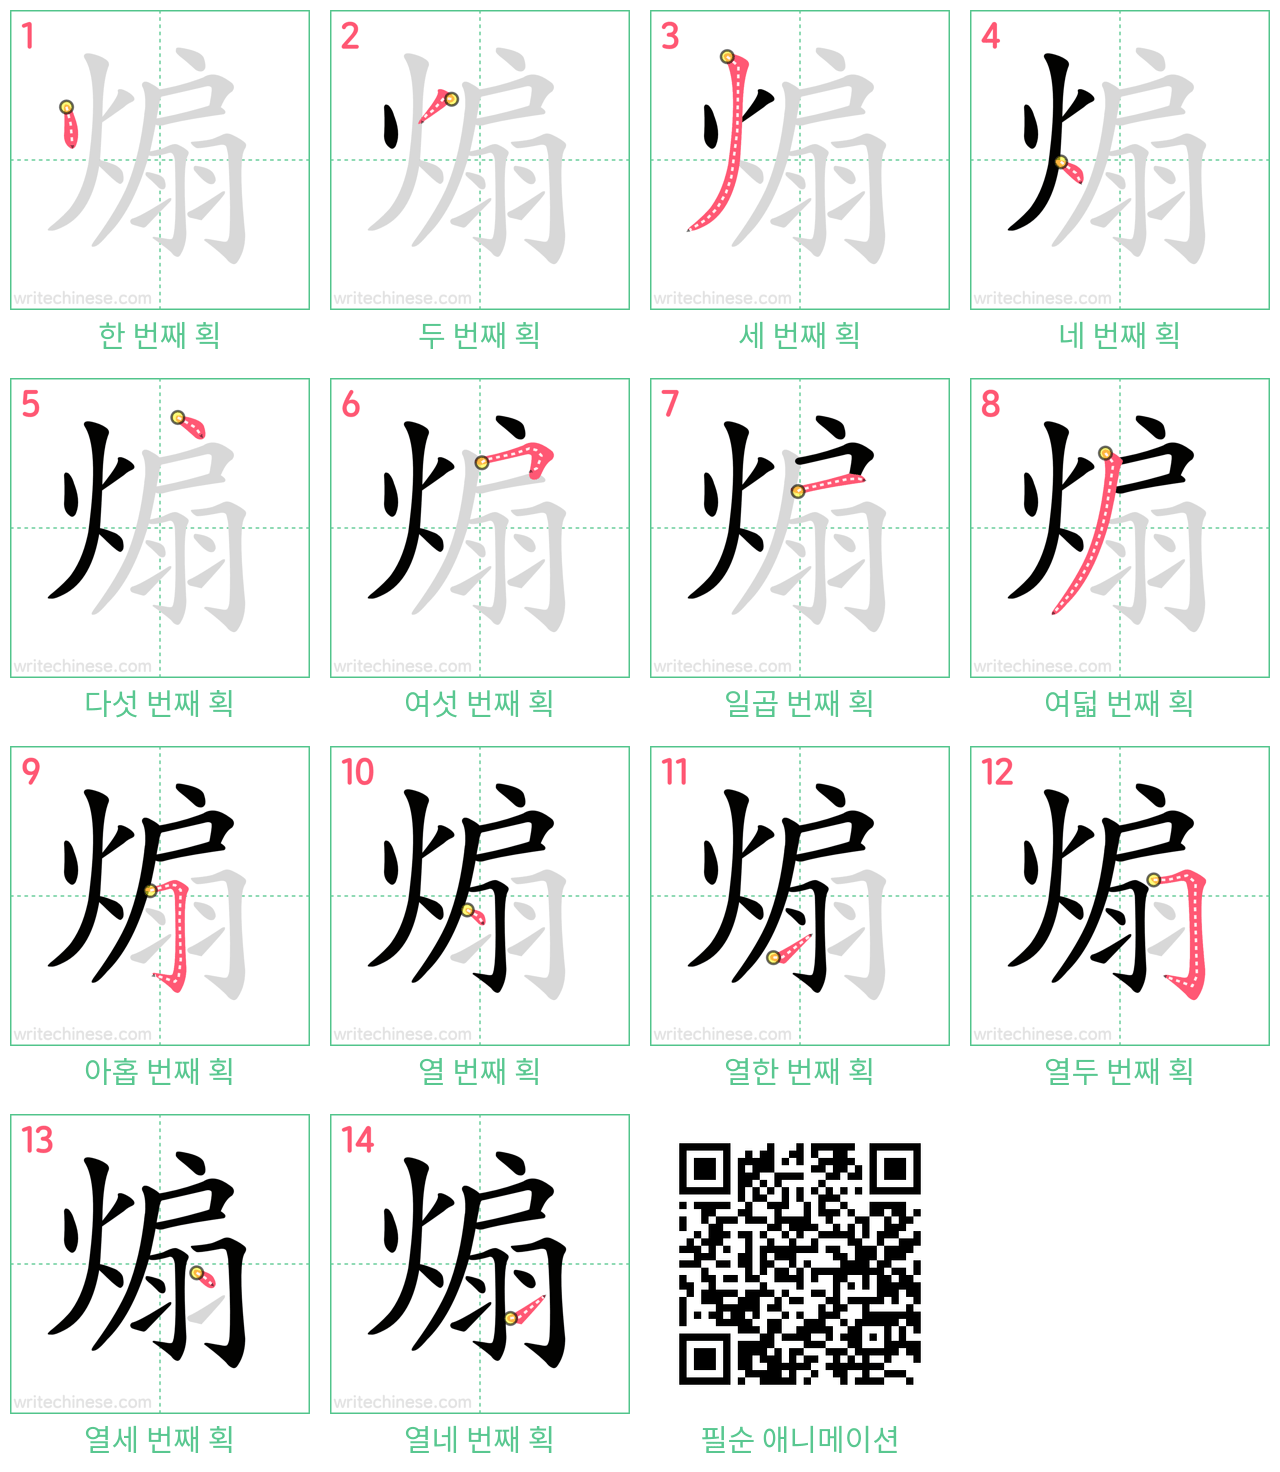 煽 step-by-step stroke order diagrams